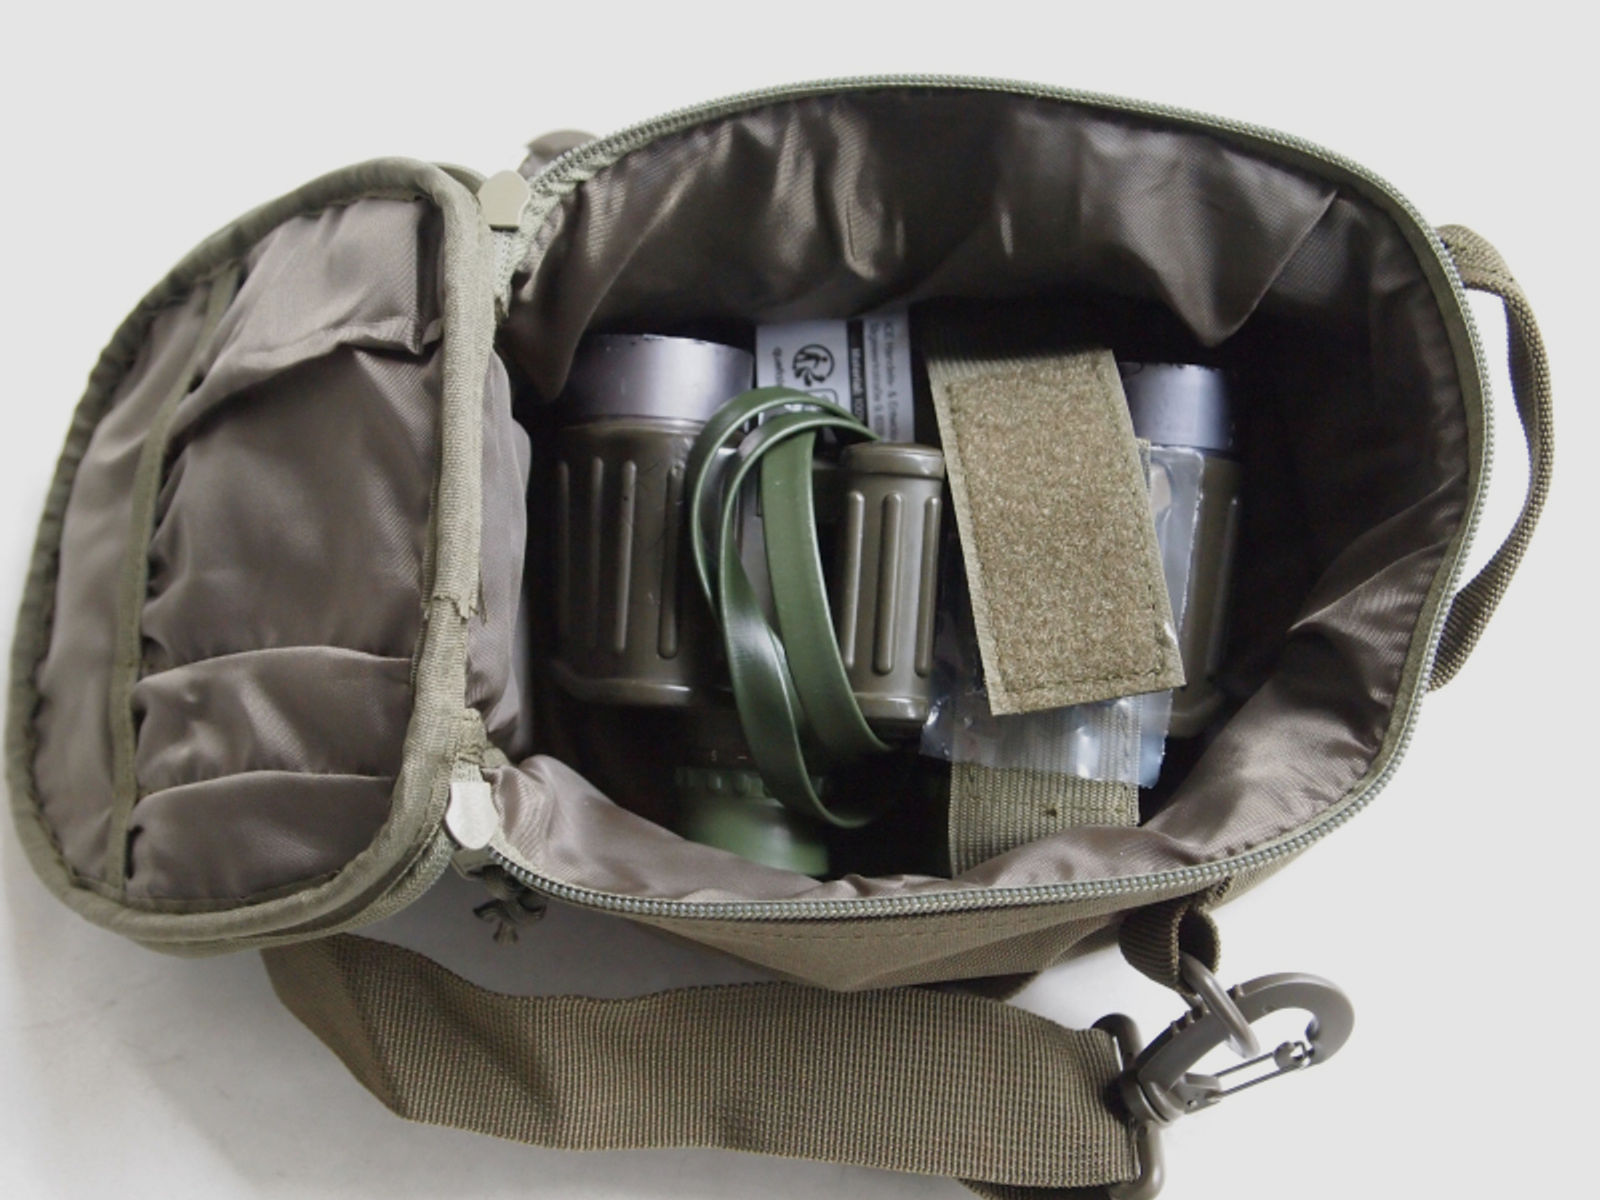 Militär Fernglas Tasche für BW 8x30 Ferngläser, Fernglas oder Gehörschutz, oliv, tactical bag